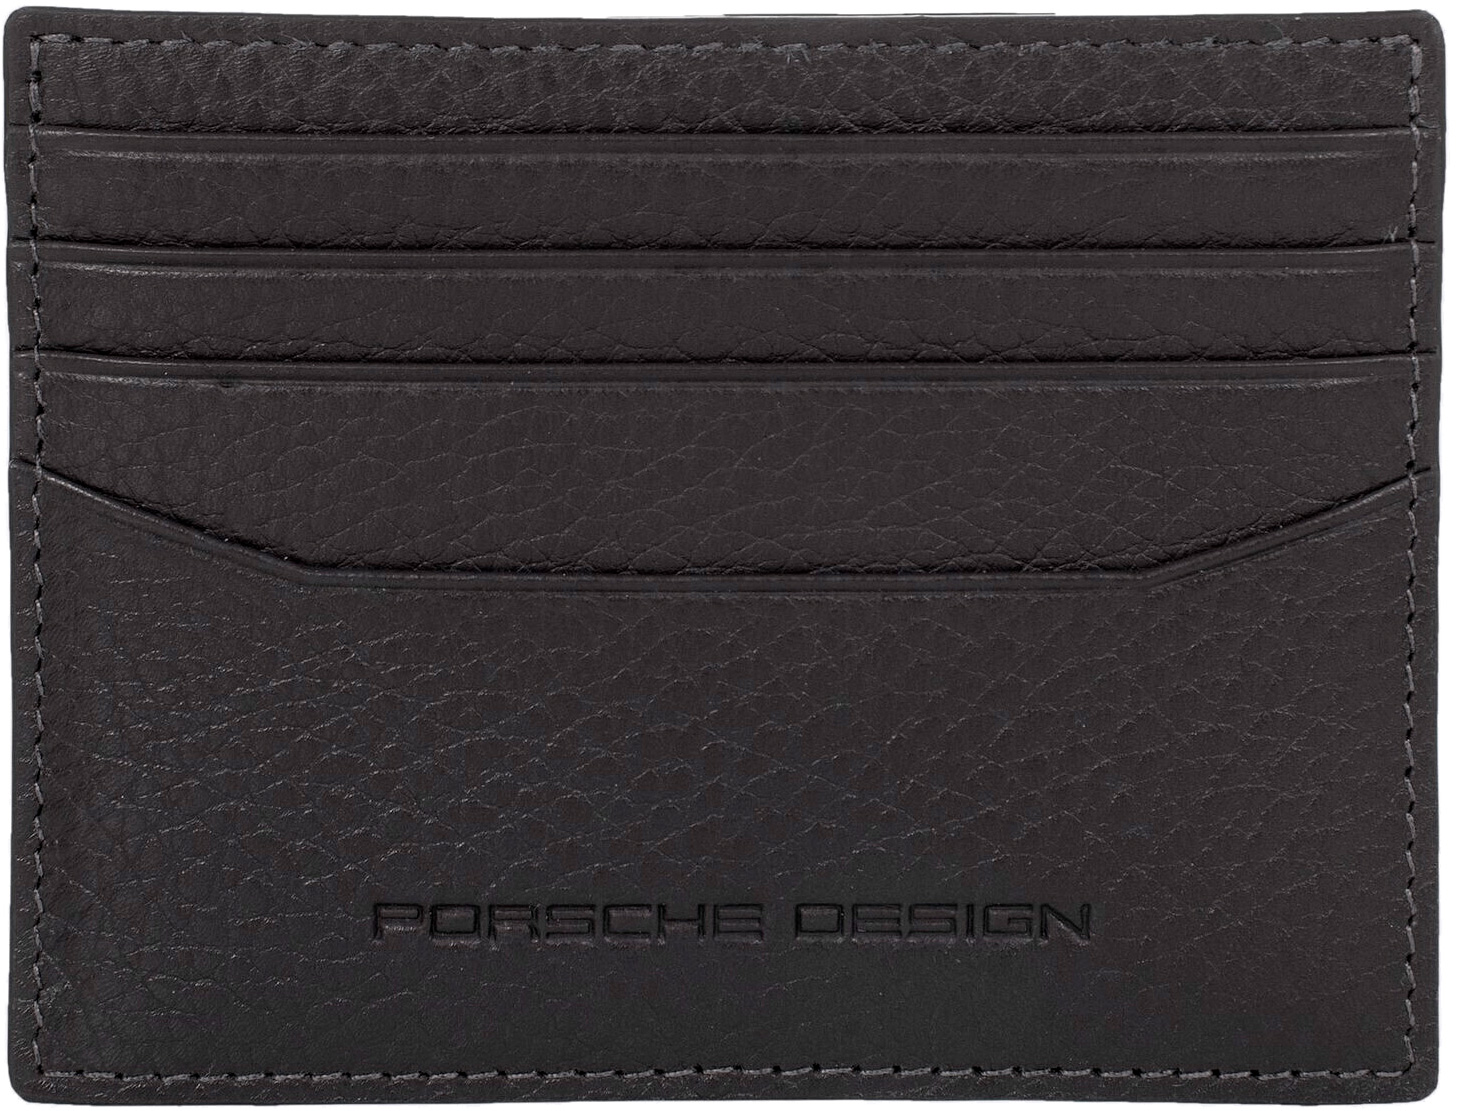   Porsche Design OSO09918.001